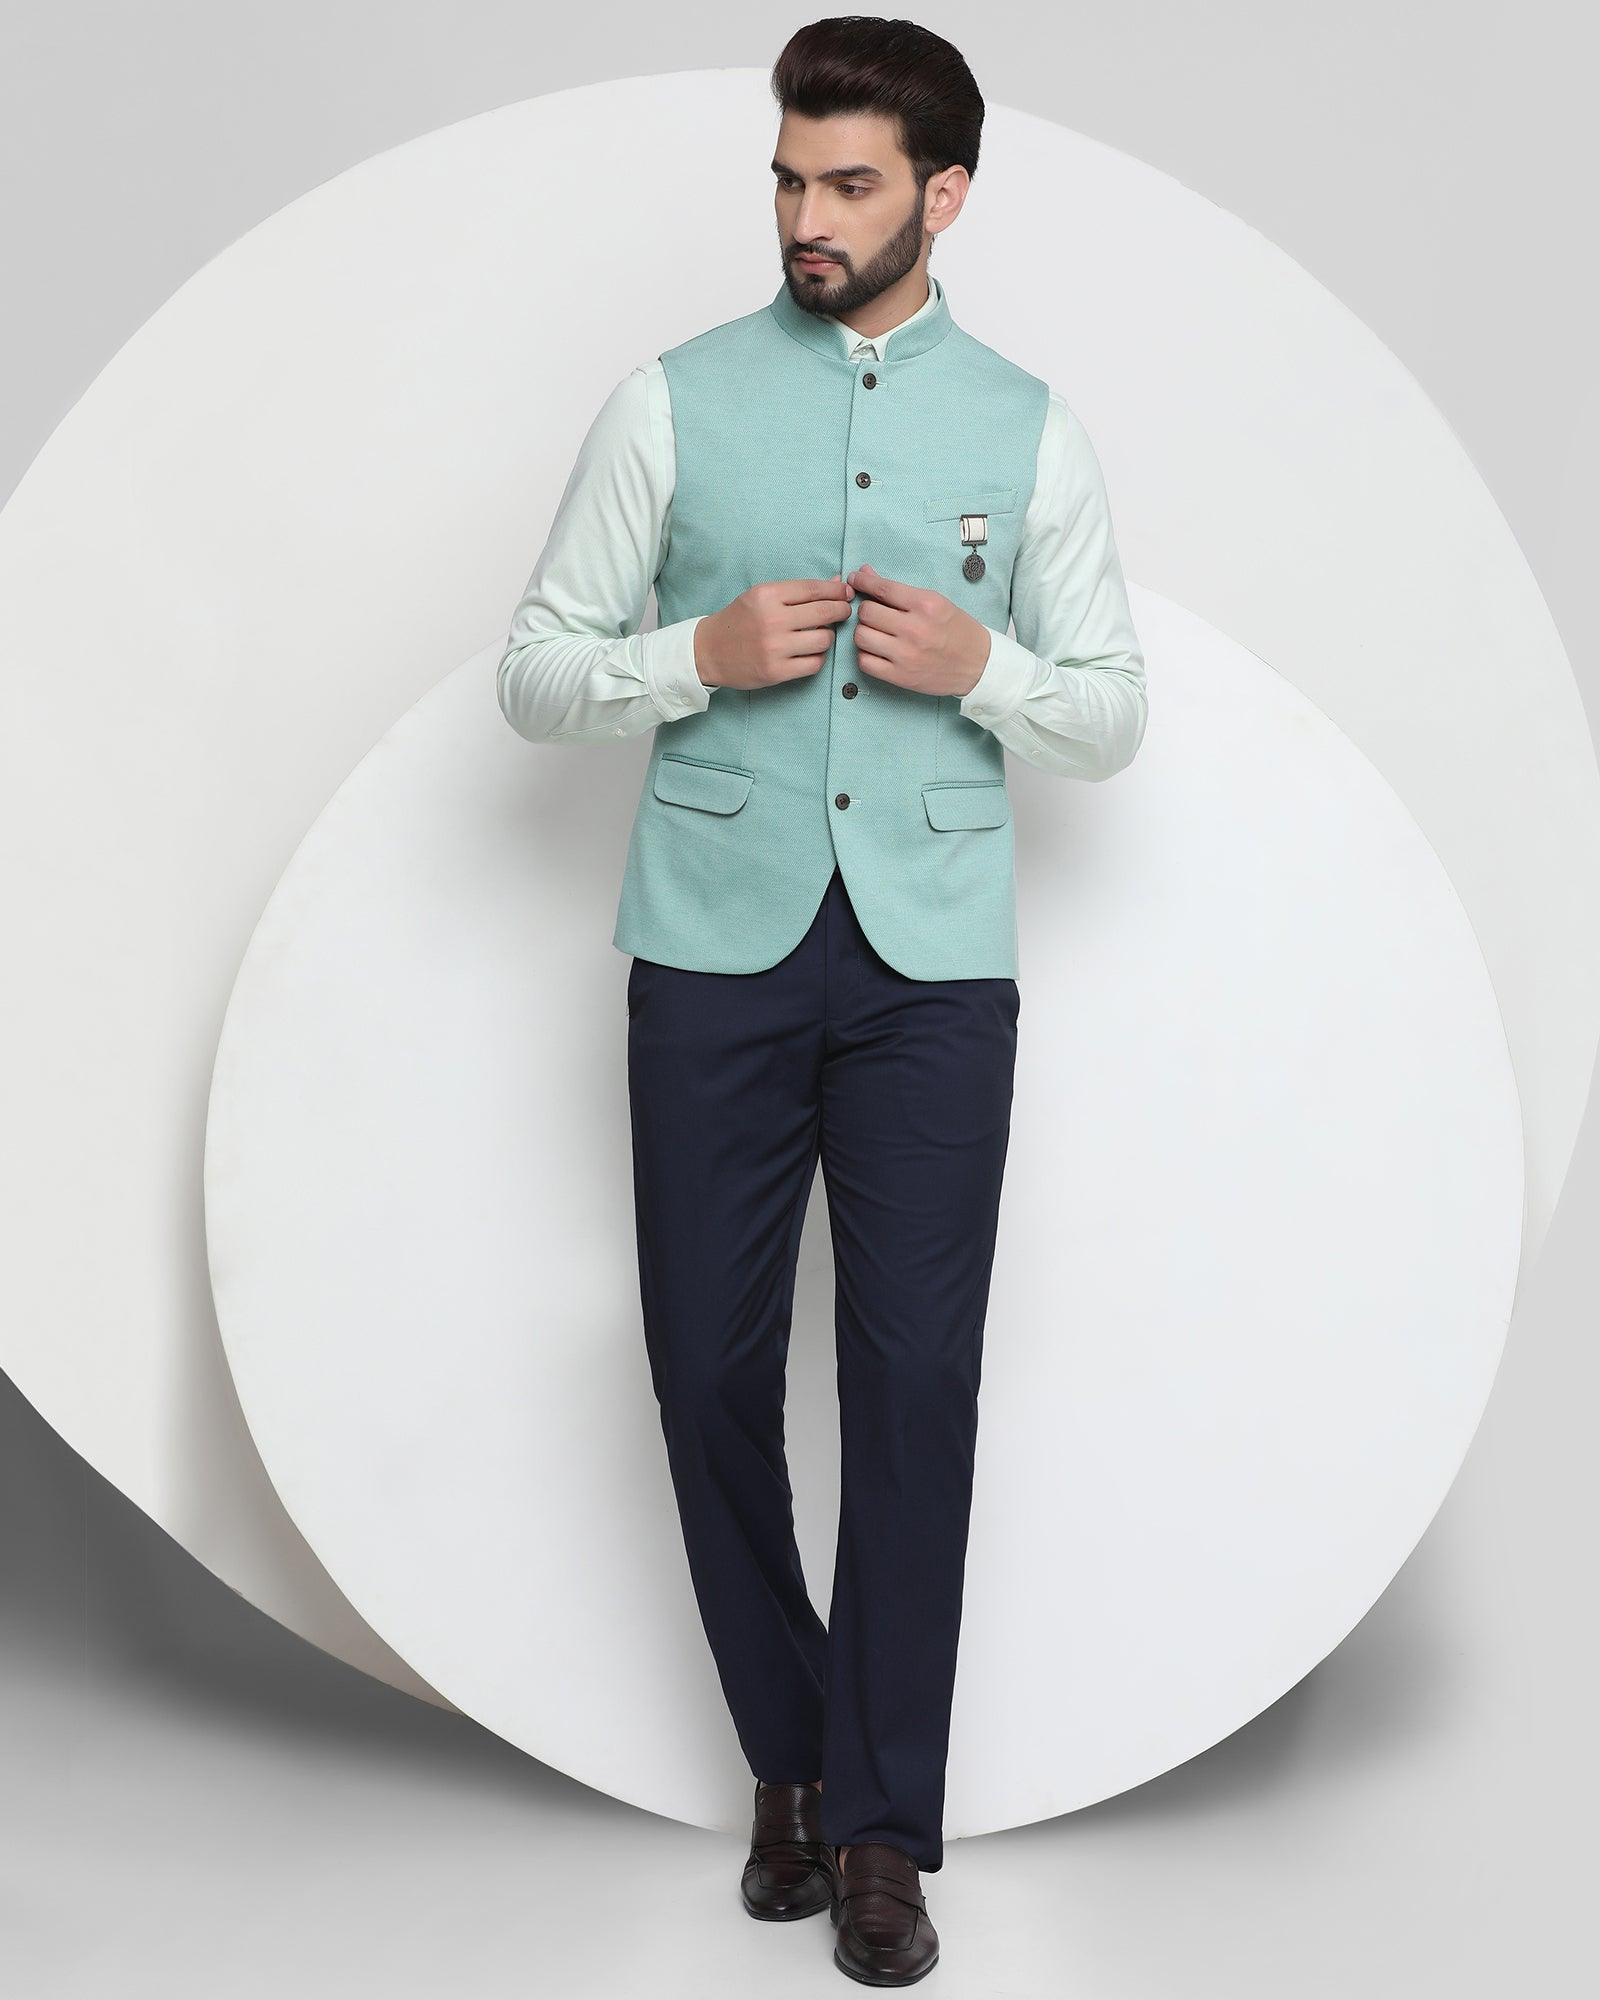 Bandhgala Formal Green Textured Waistcoat - Sable